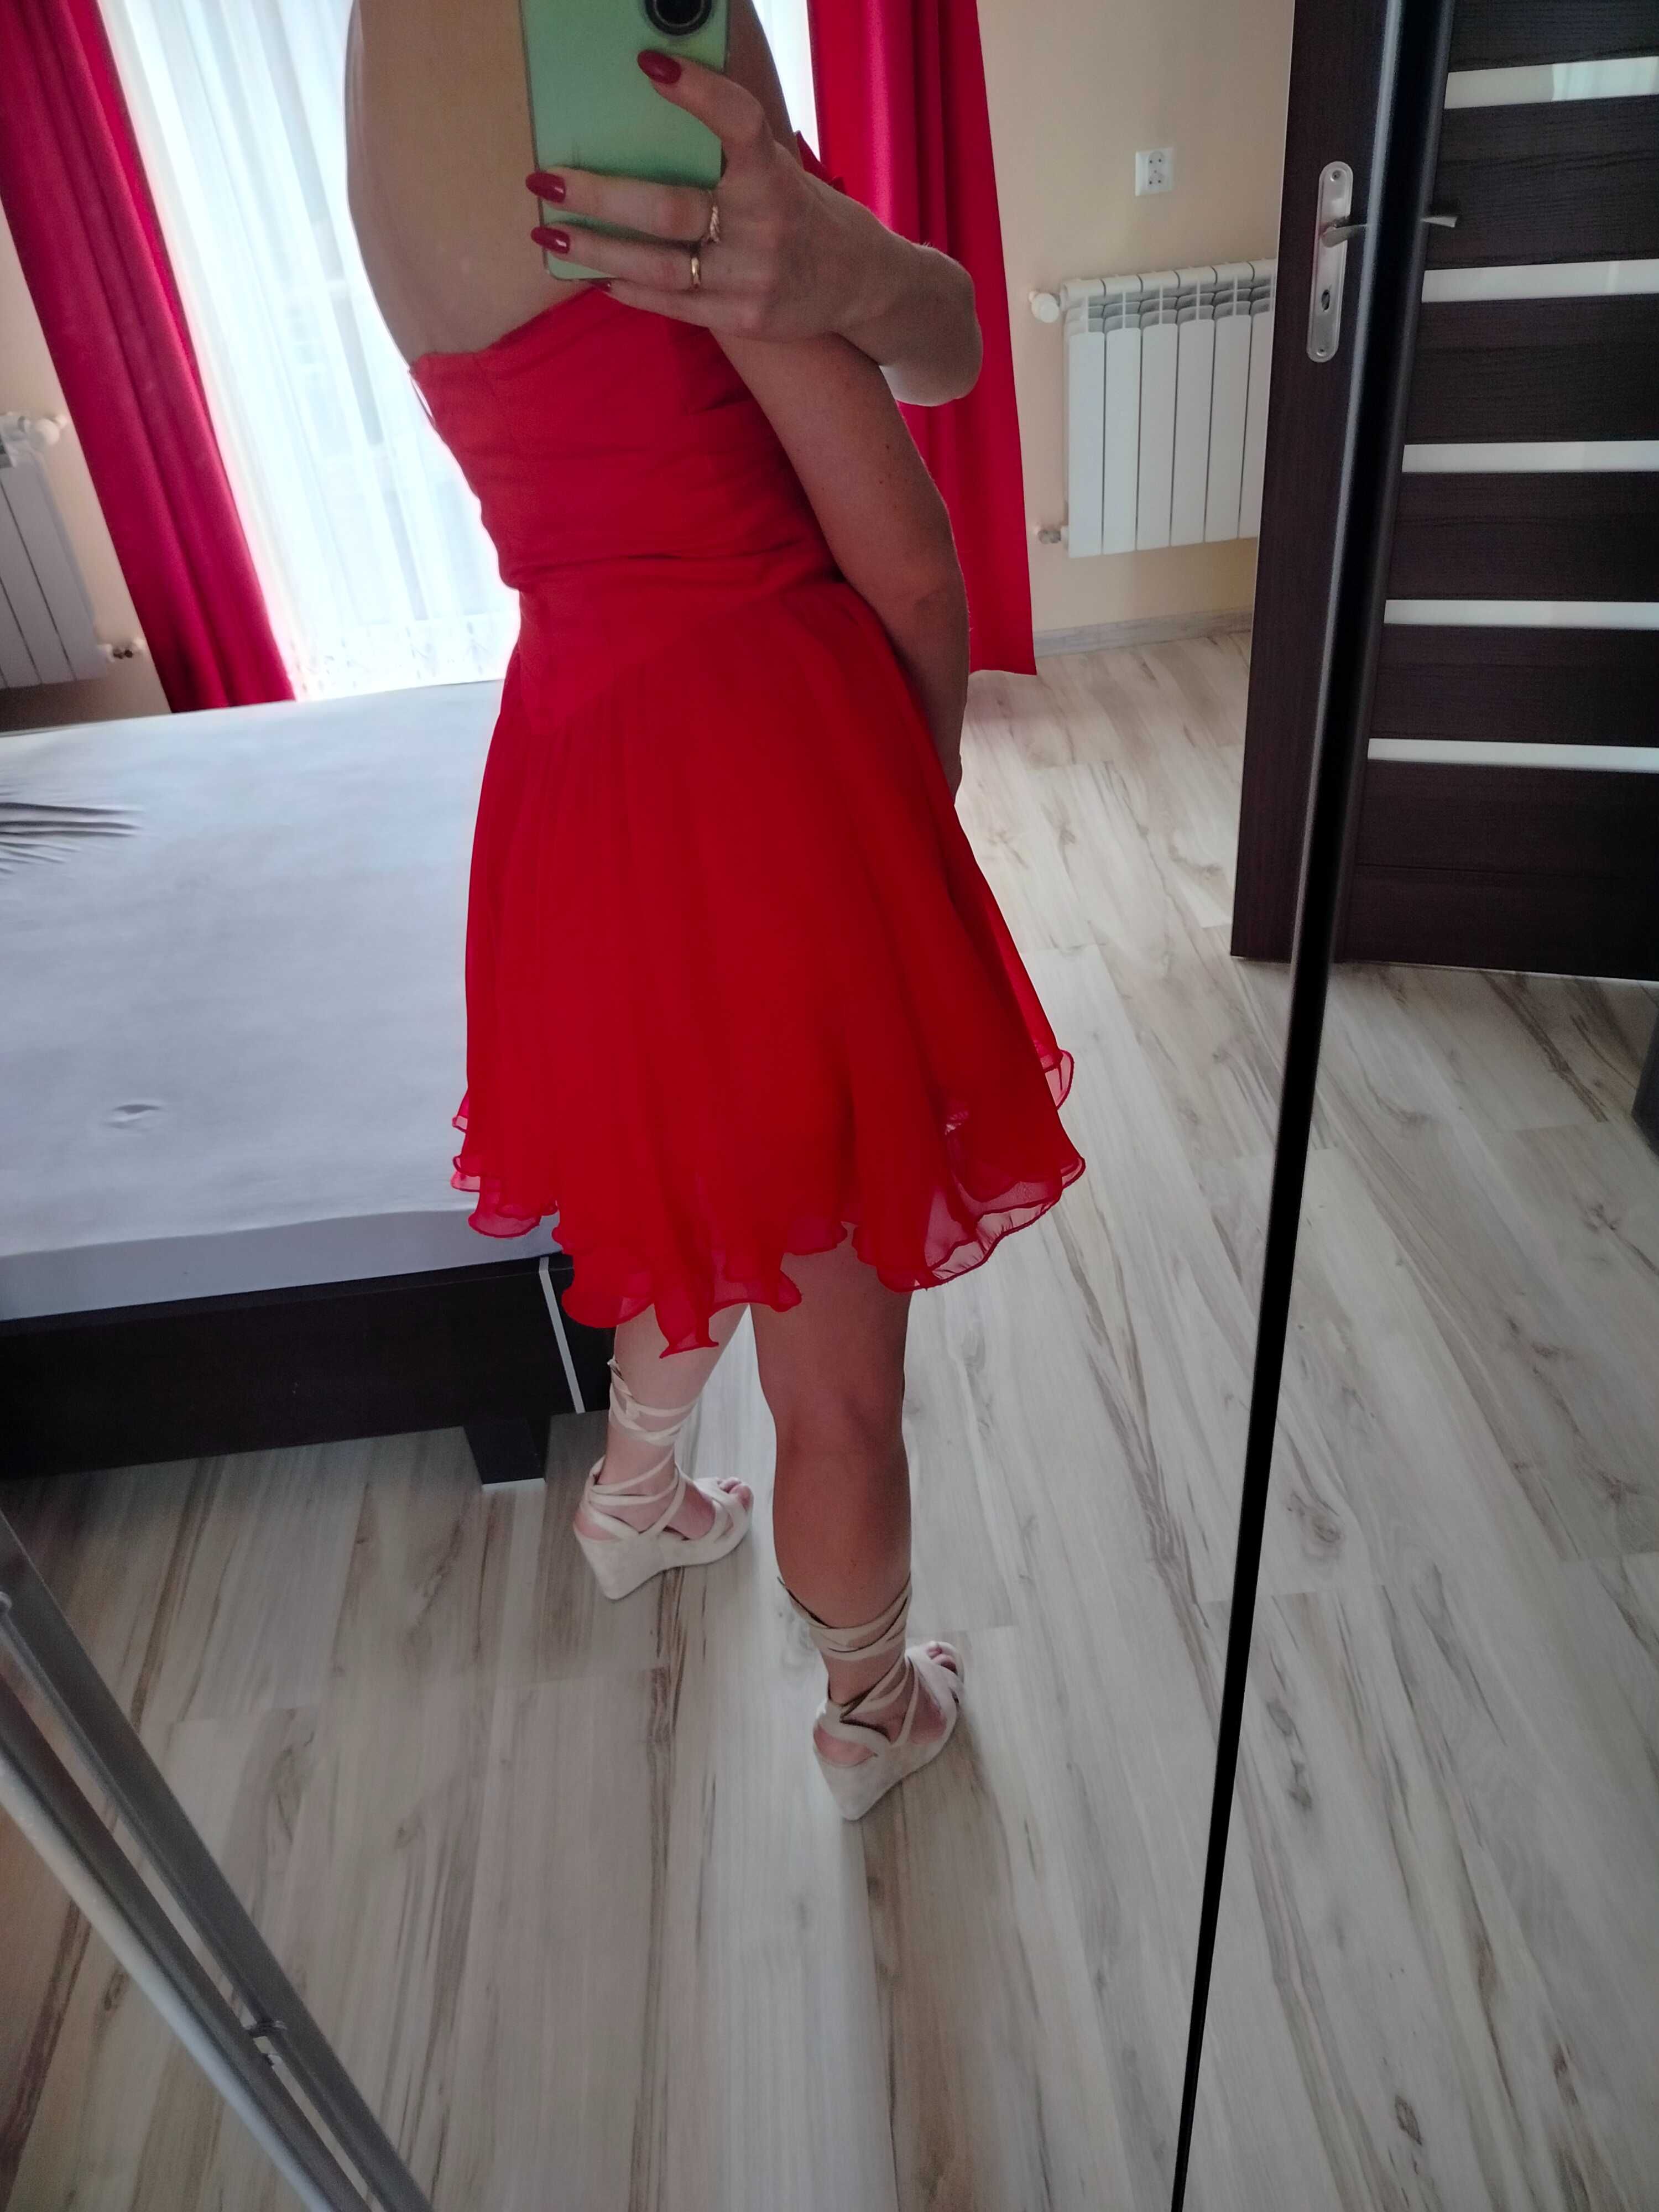 Piękna czerwona sukienka wieczorowa s